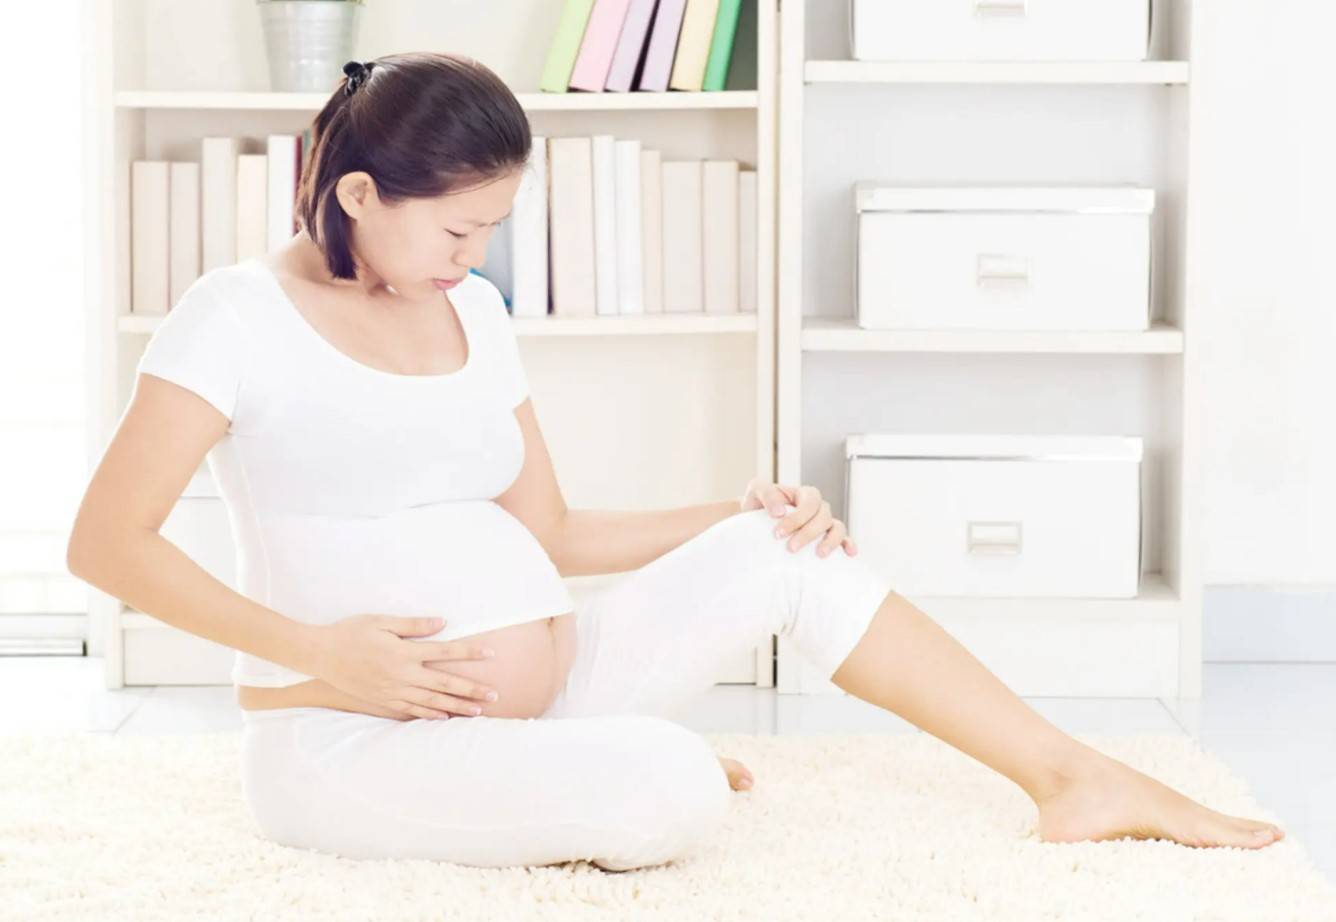 怀孕六个月以后,就要开始预防早产问题,准妈妈上岗前都要学习